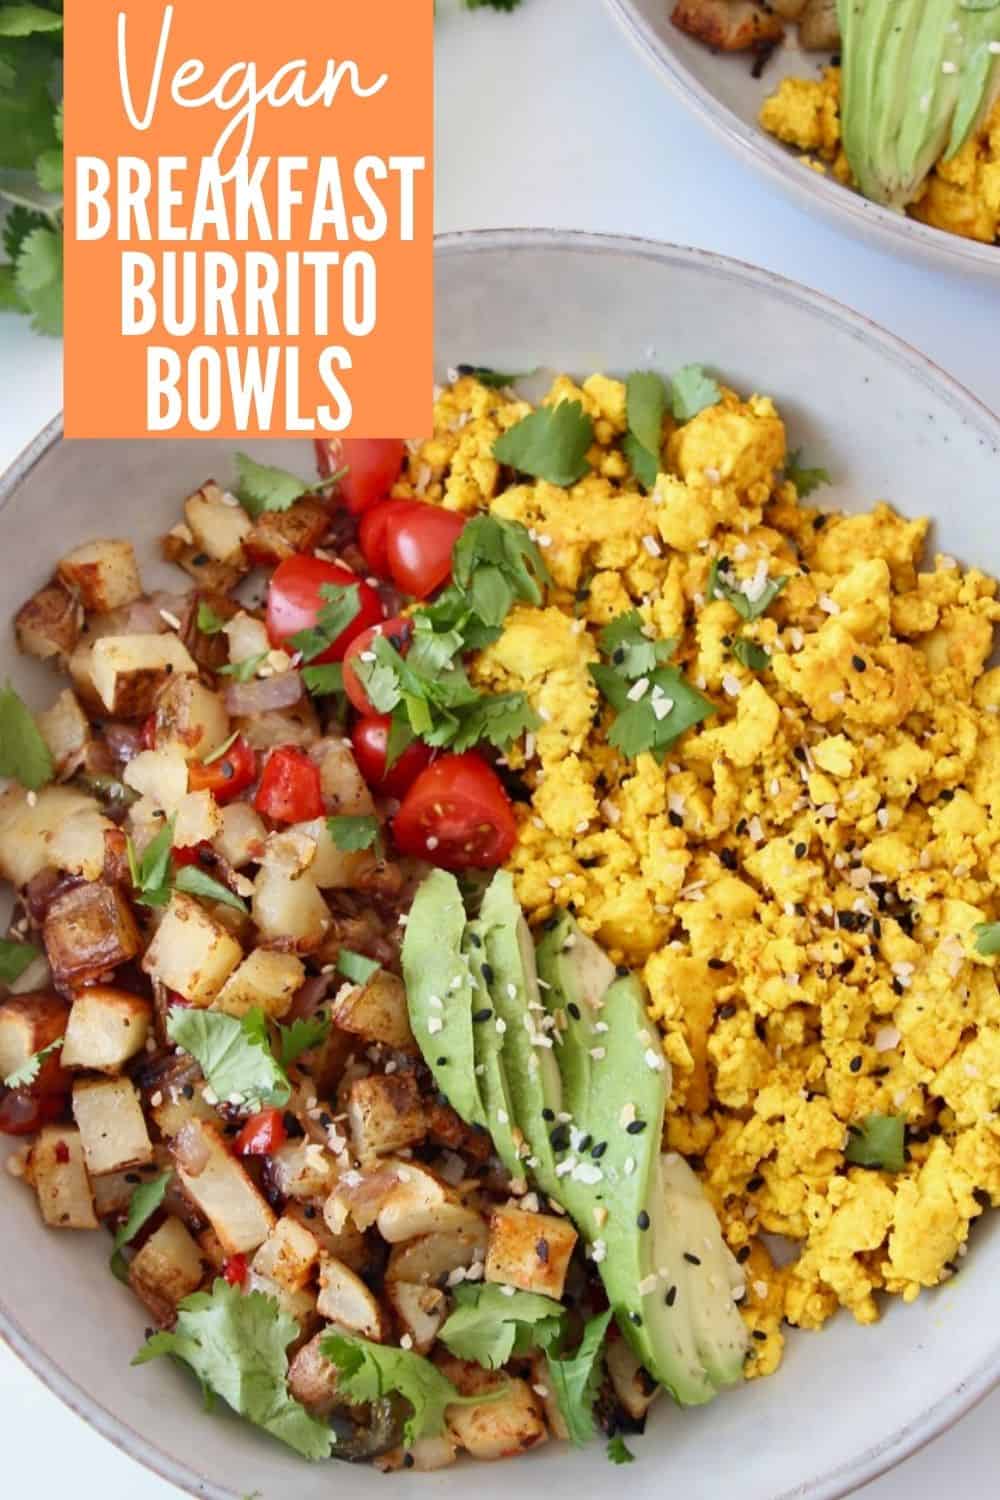 Tofu Scramble Burrito Bowl Recipe - Bowls Are The New Plates